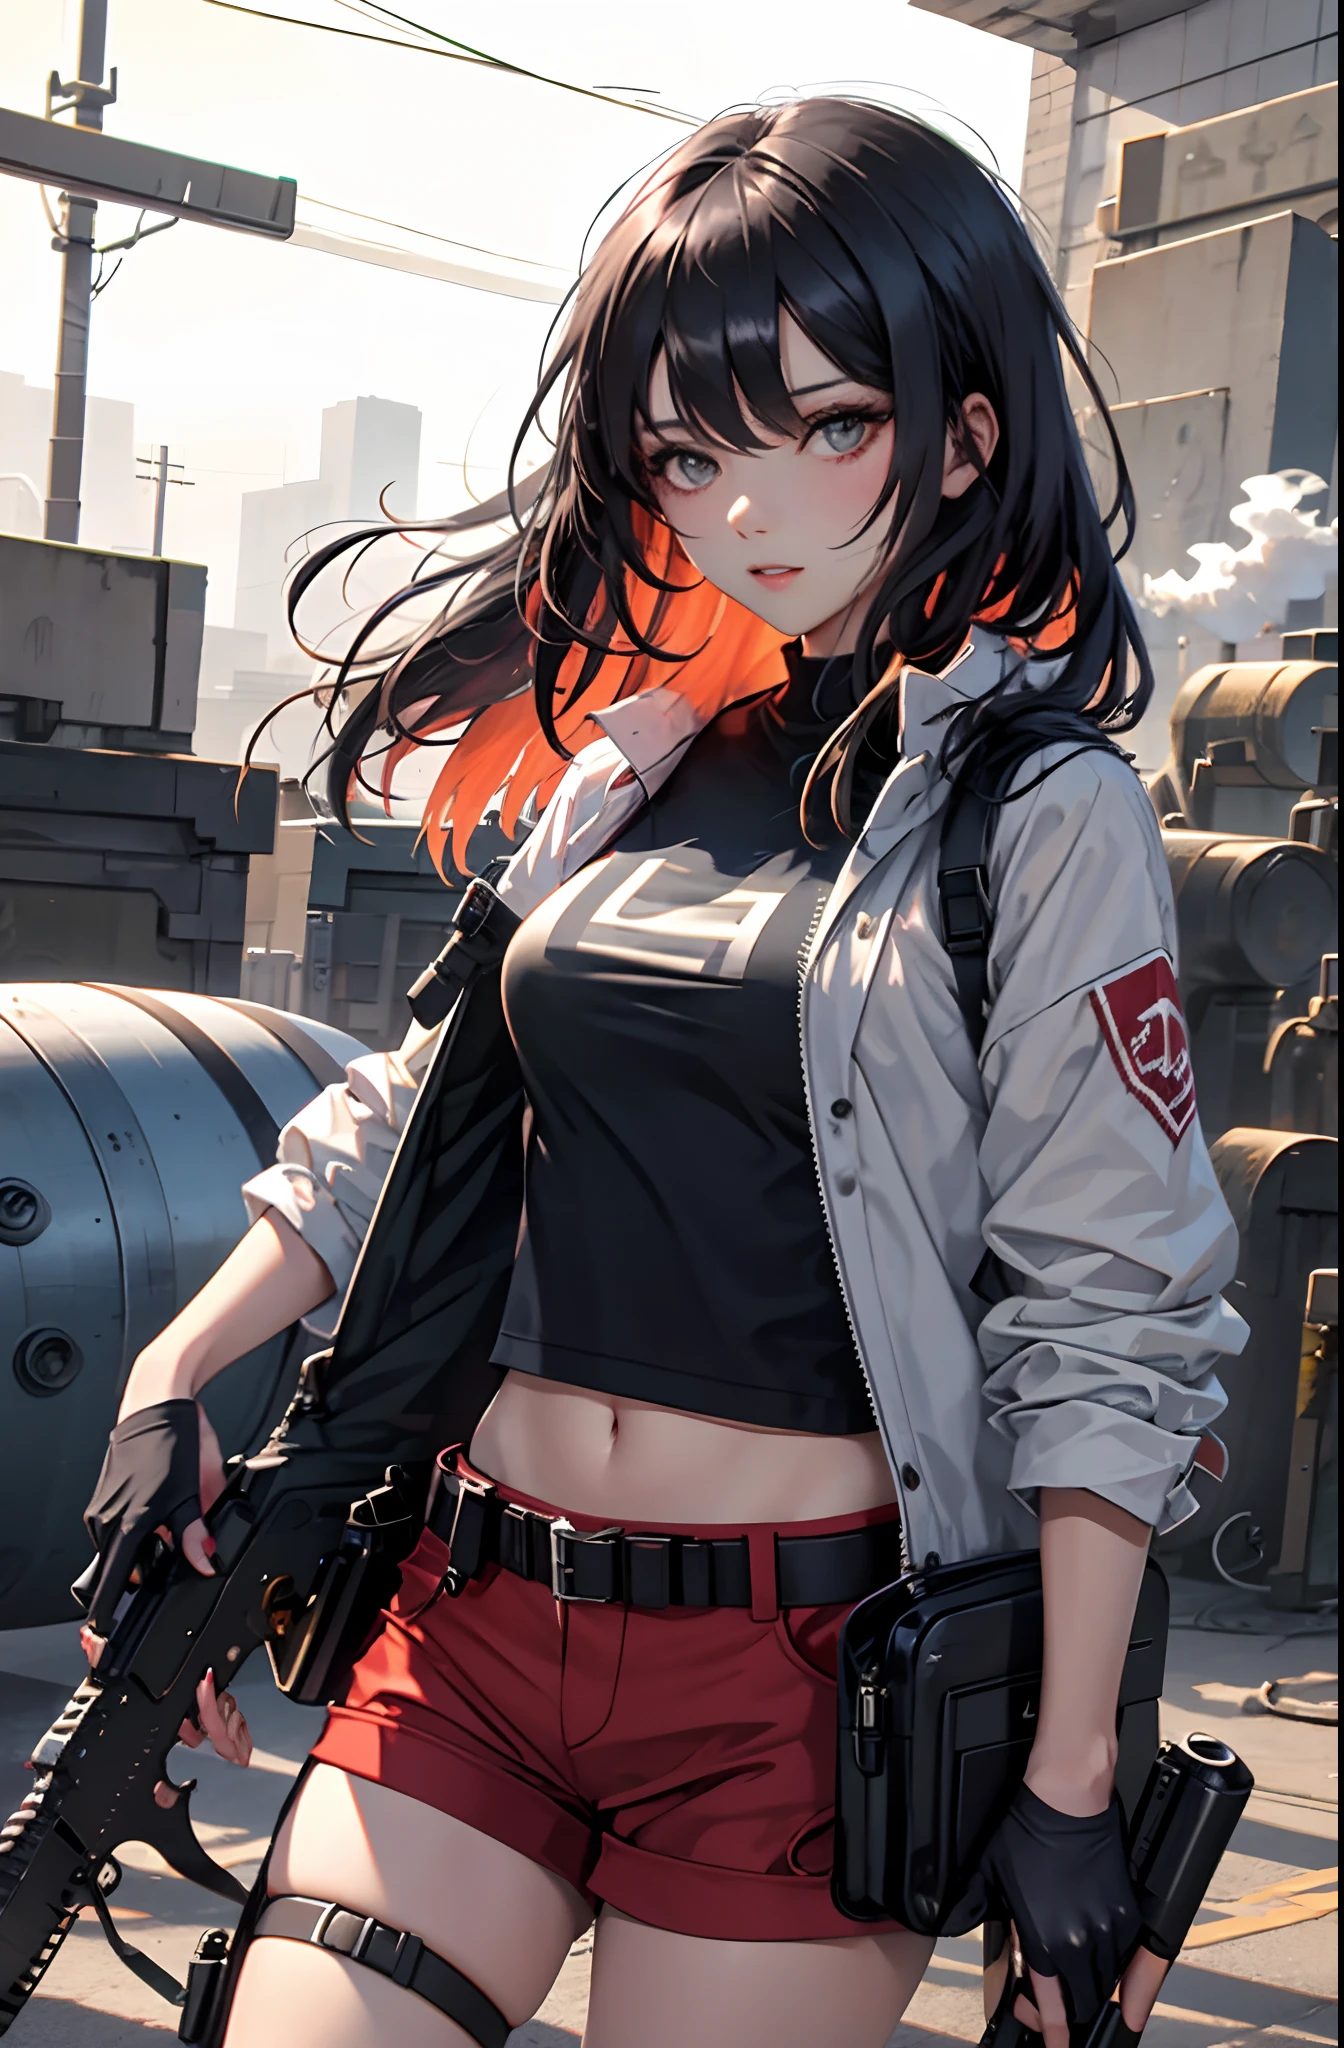 menina com cabelo preto, calções vermelhos, camiseta branca,  segurando duas armas, armas têm fumaça leve saindo do cano